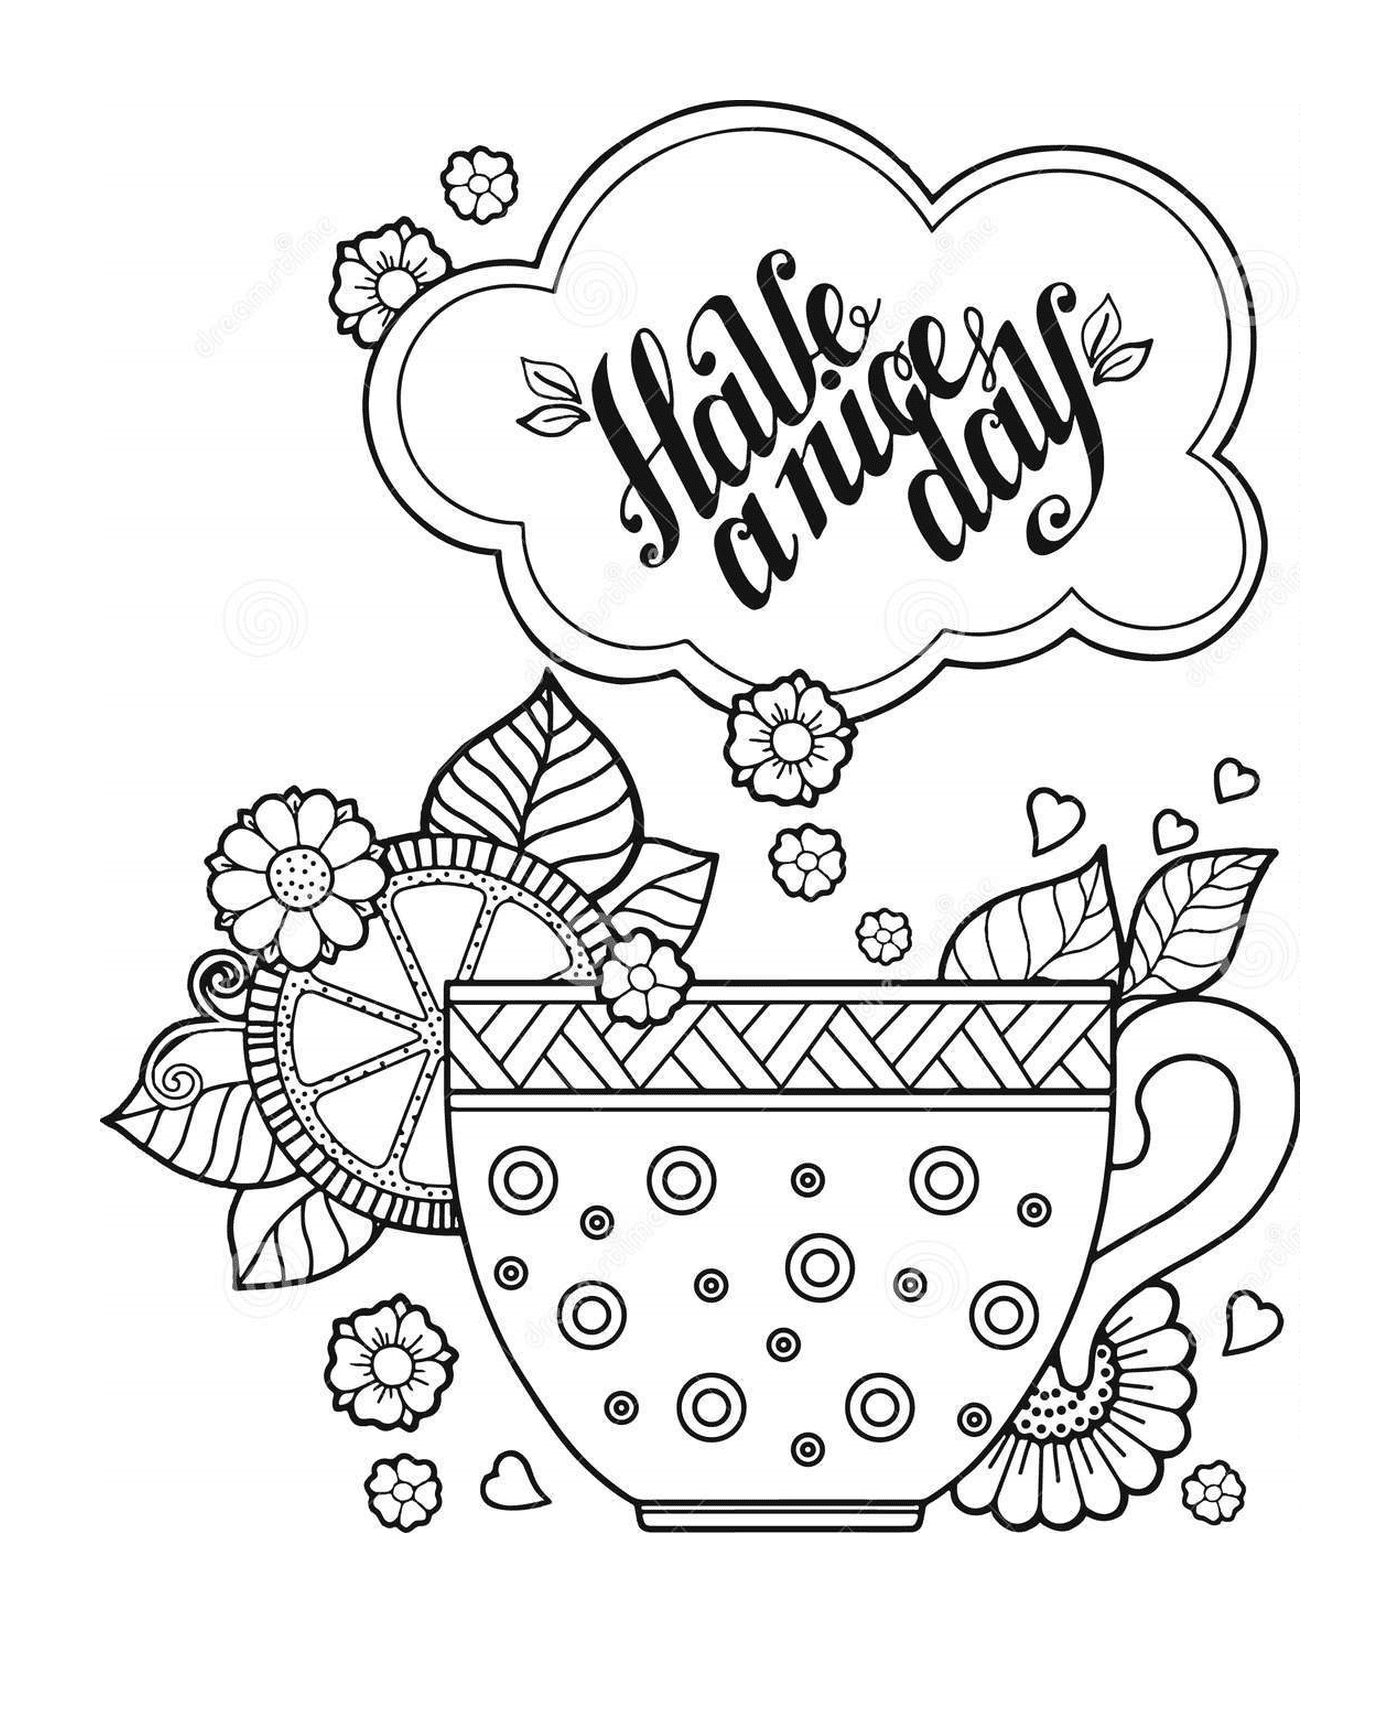  Чашечку чая и кофе в прекрасный день, книгу для взрослых 